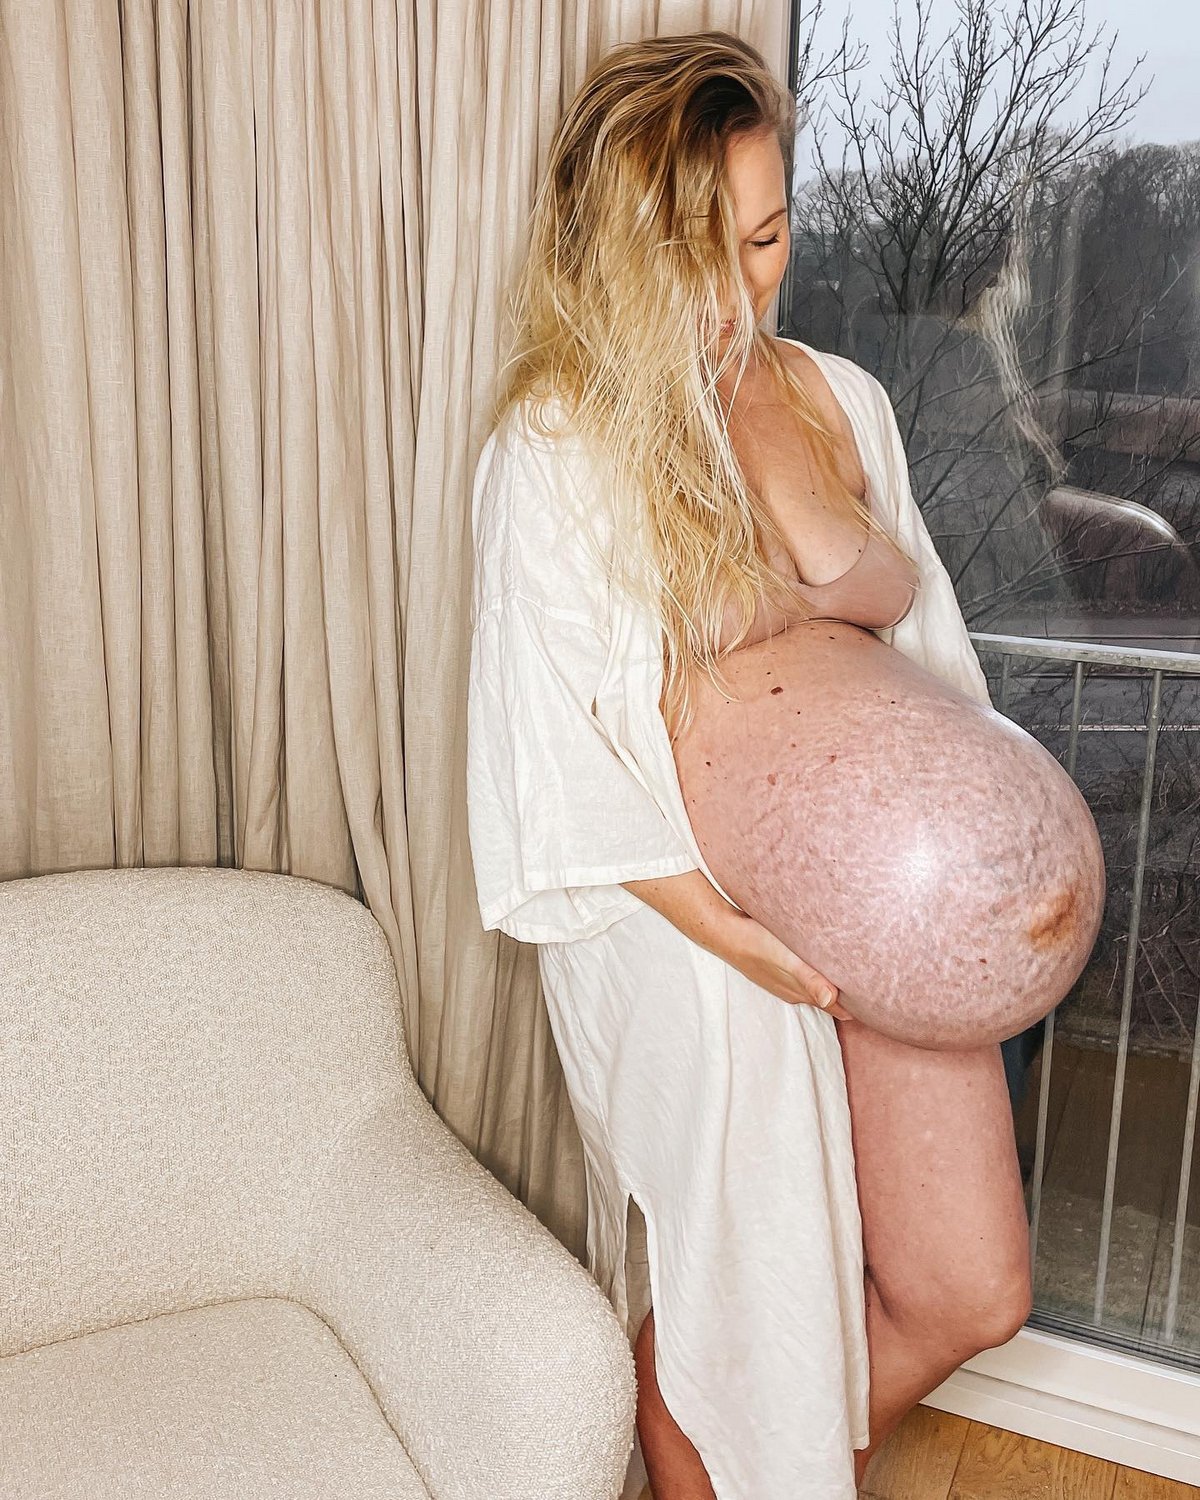 Une maman enceinte montre son ventre « unique » à 35 semaines et laisse les gens sans voix